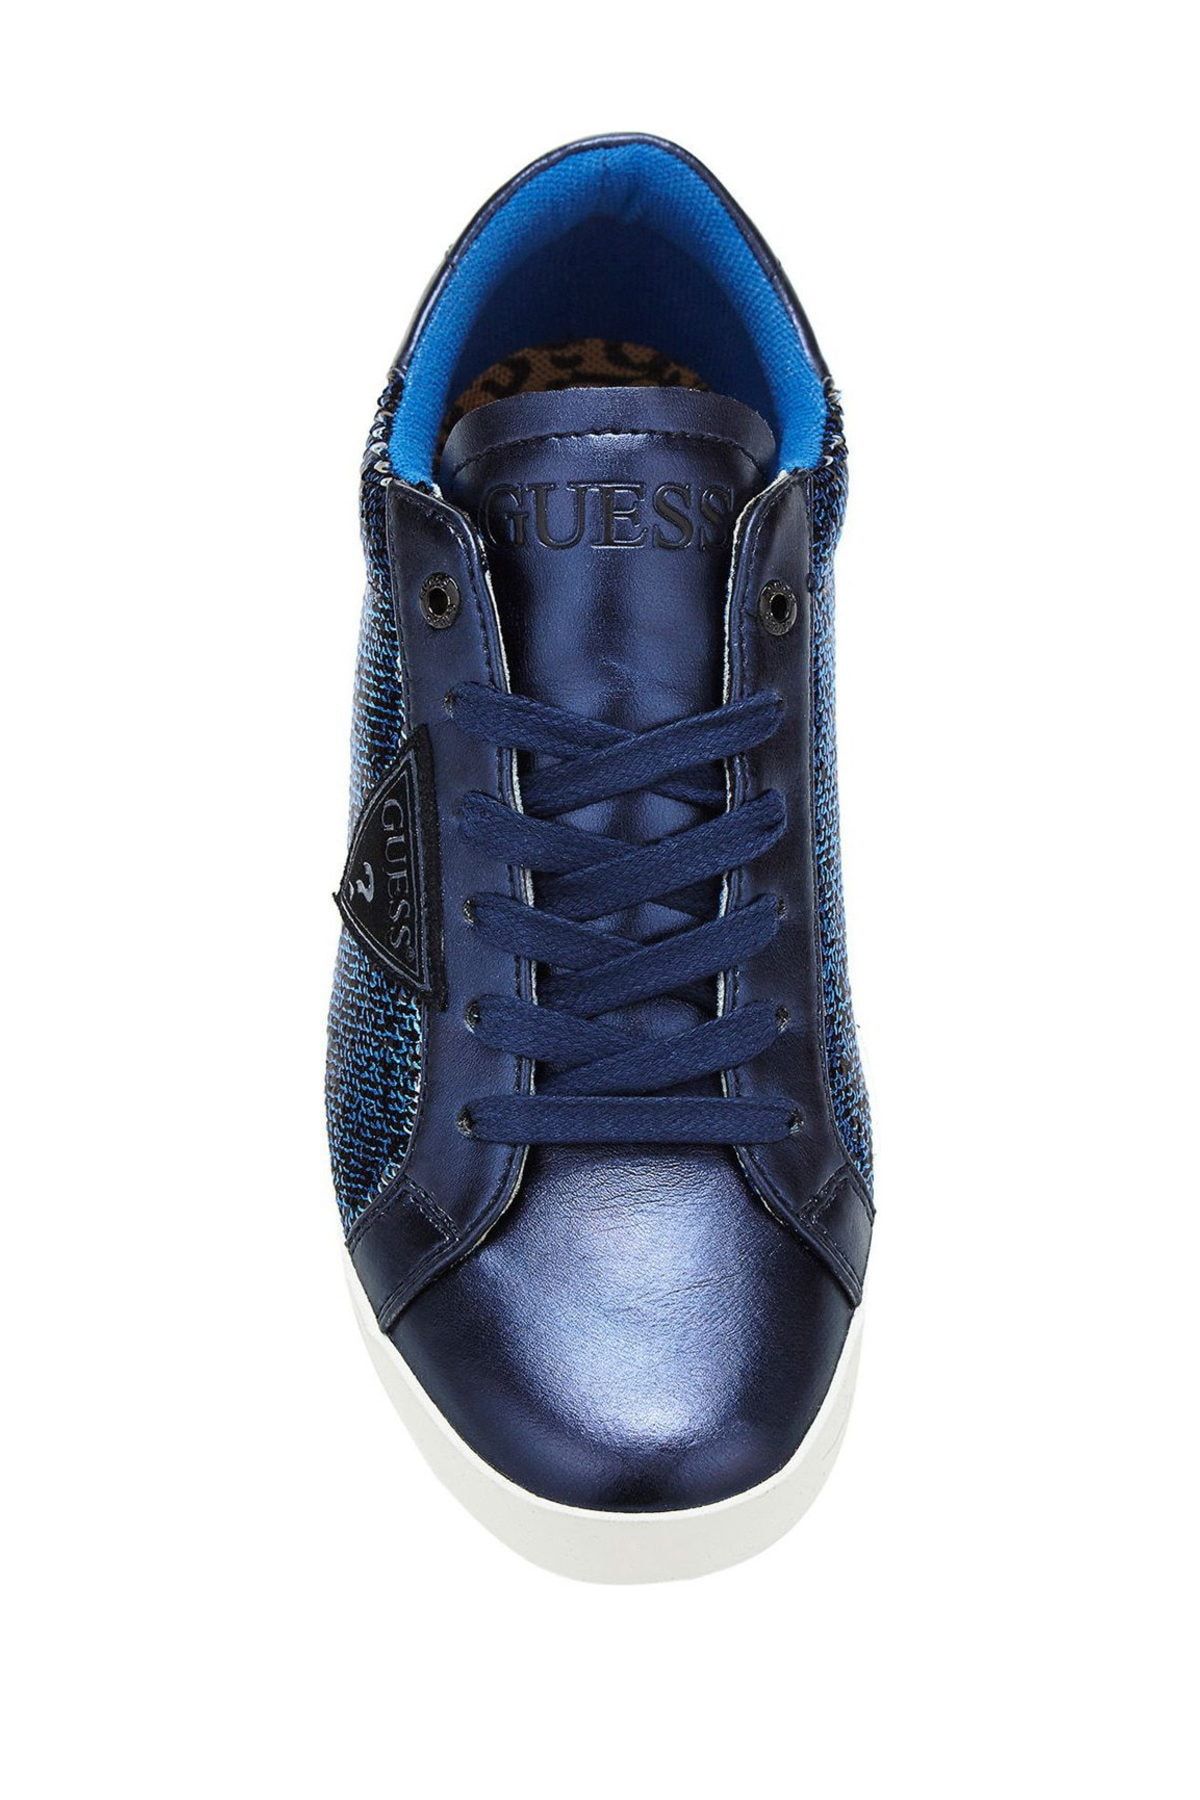 Guess Collection Kadın Mavi Sneaker FLVEG3FAM12